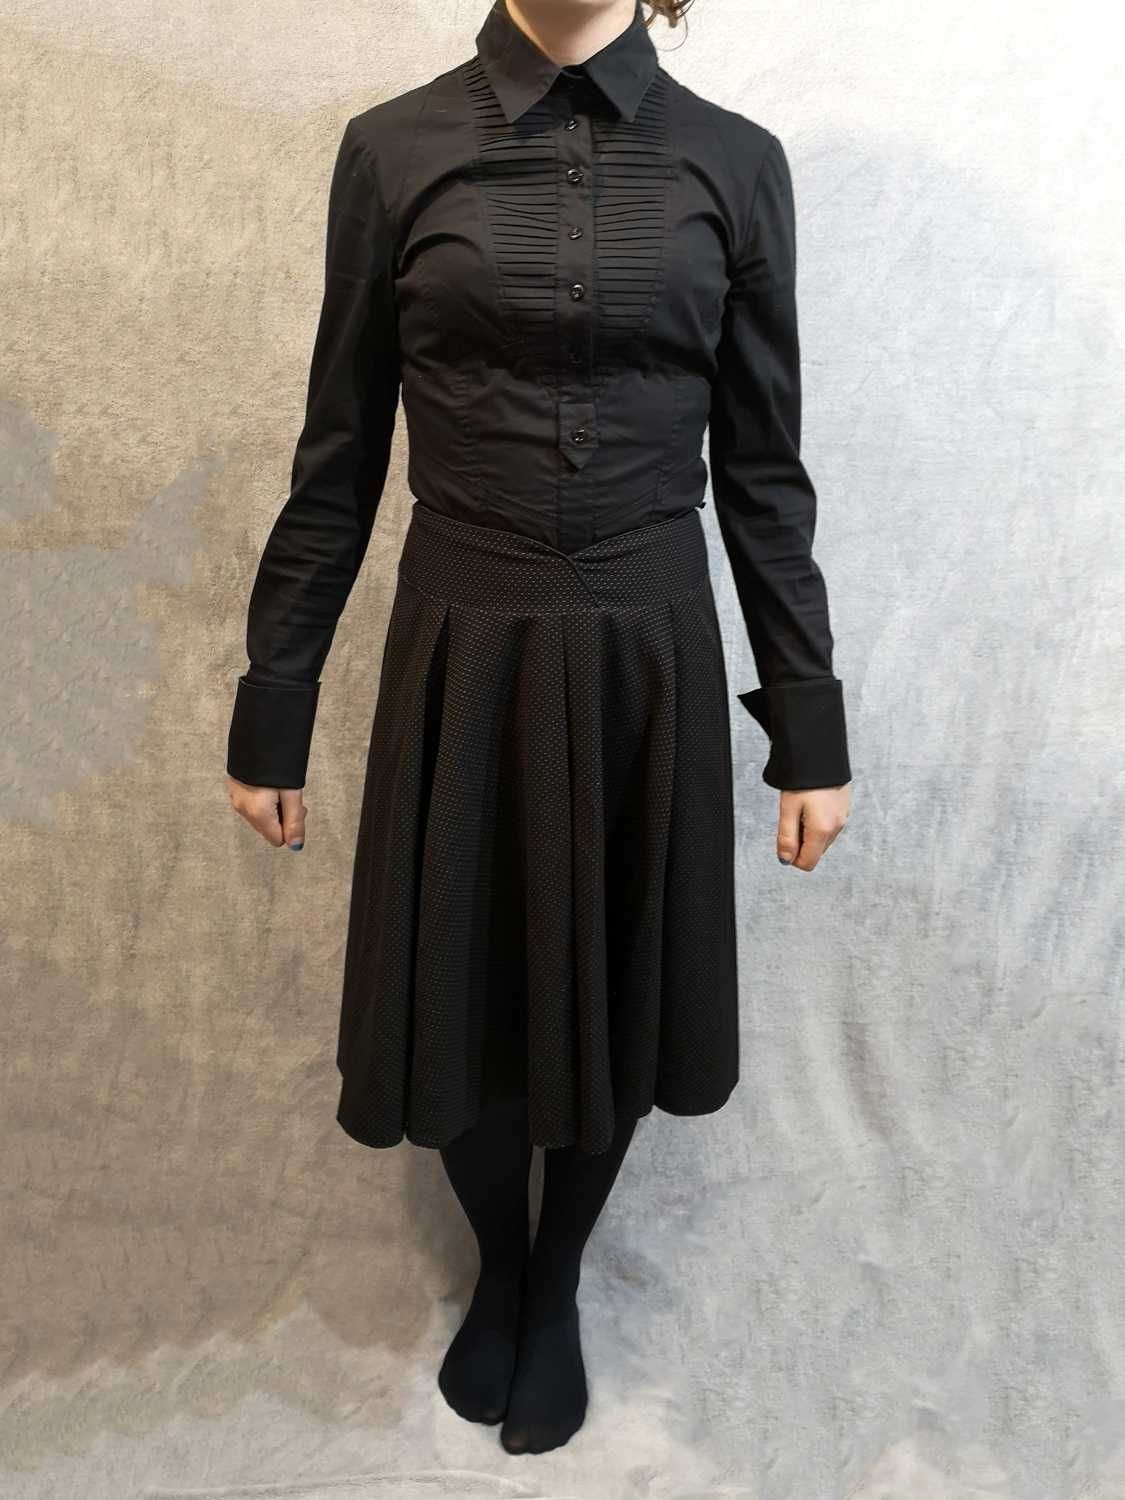 Spódnica czarna w groszki kropki midi za kolano goth gothic L 40